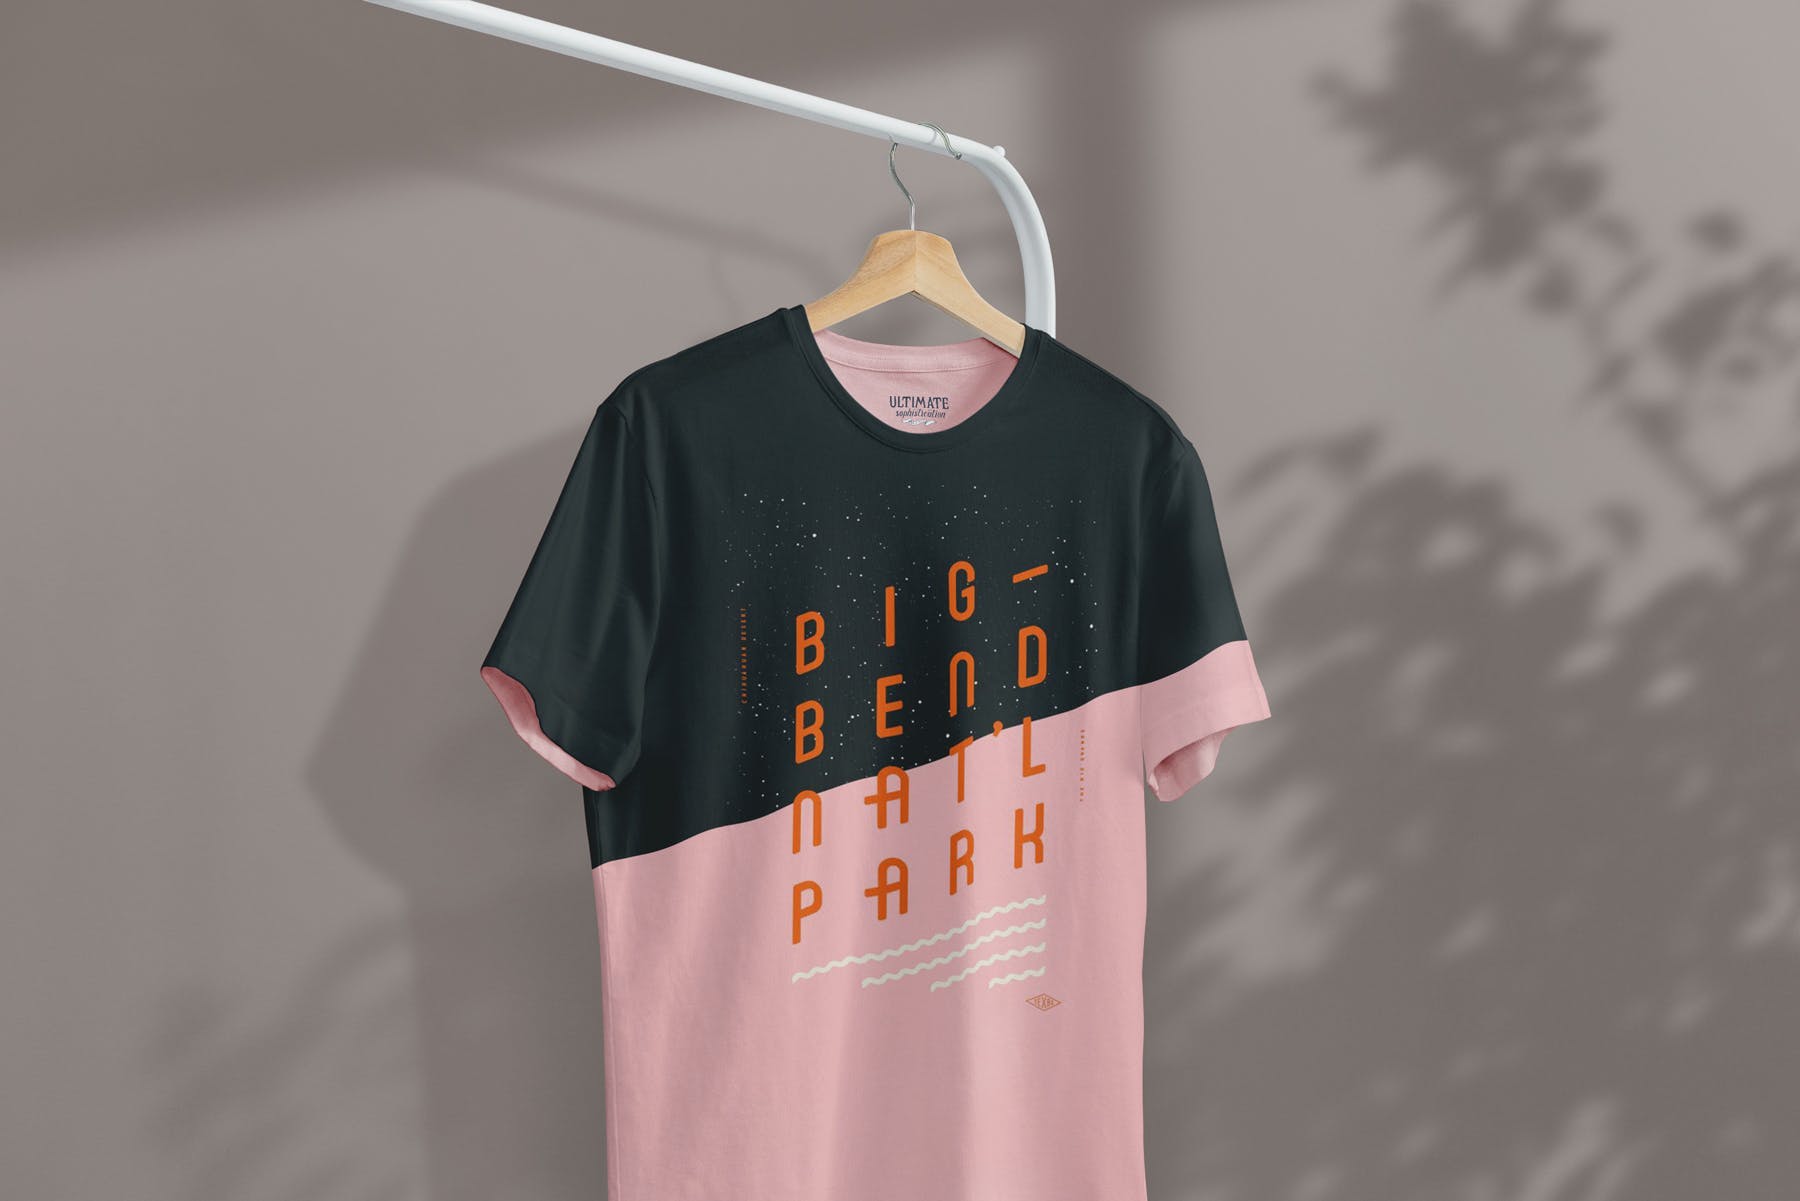 简易晾衣架T恤设计效果图样机非凡图库精选 T-Shirt Mock-Up on Hanger插图(6)